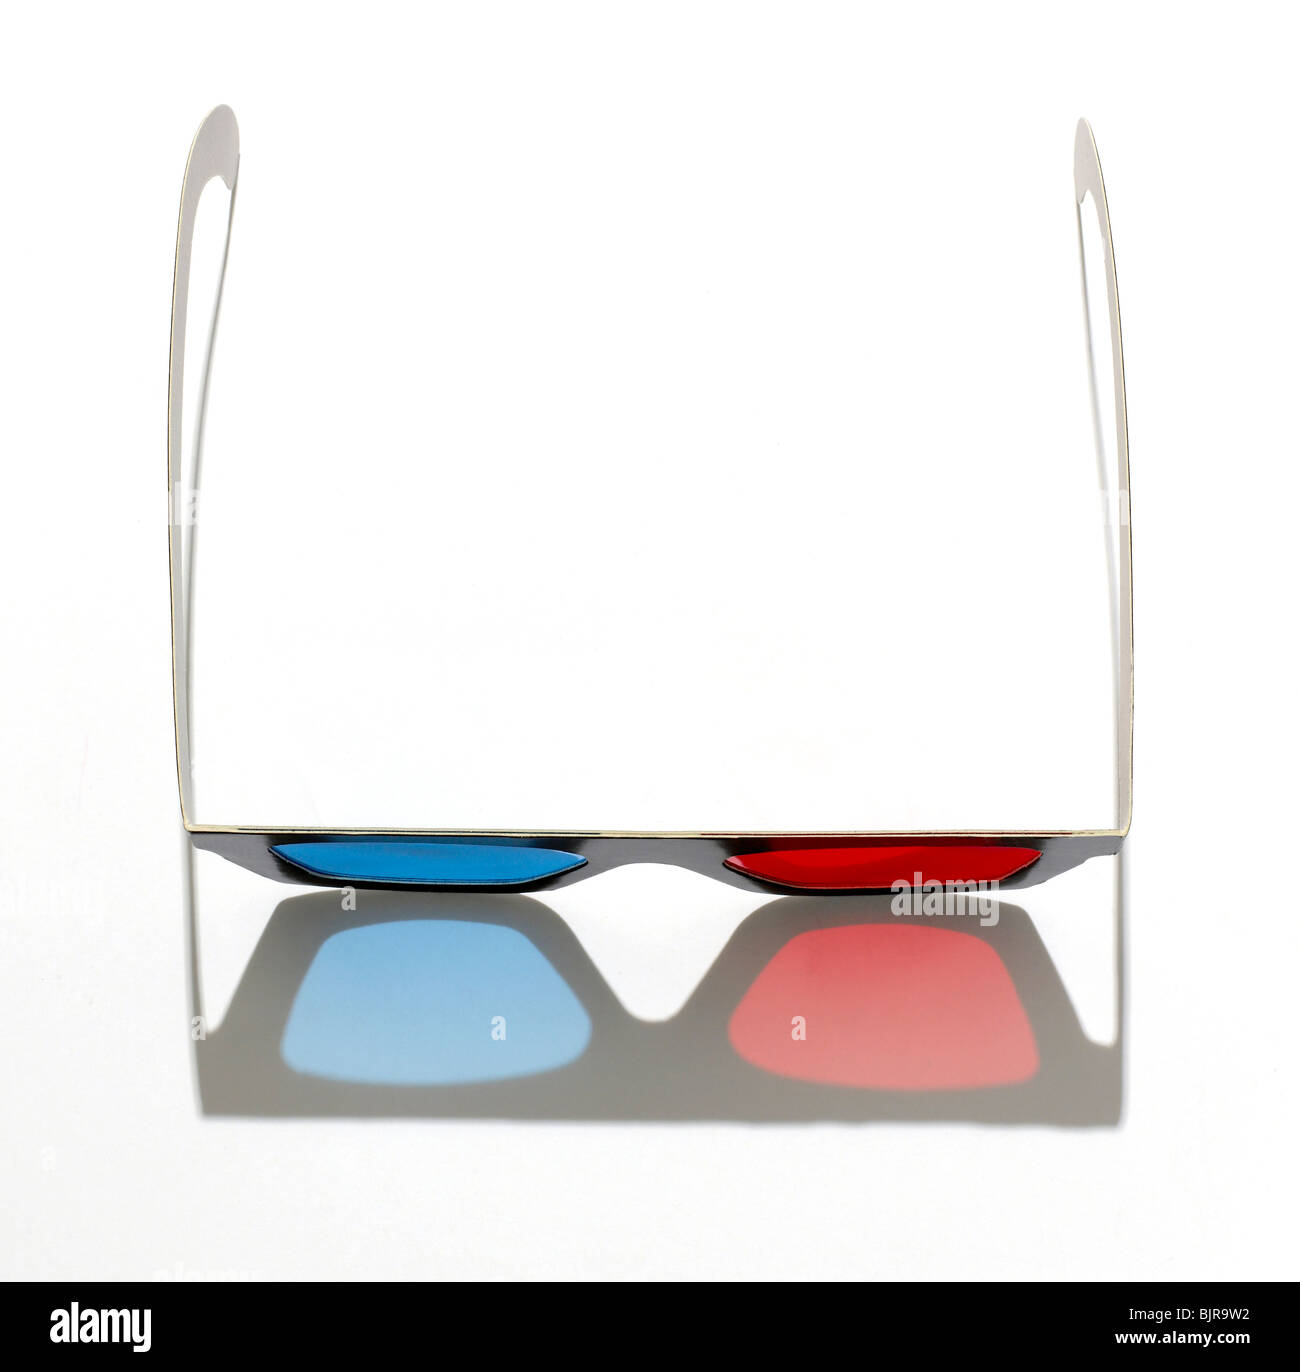 Visualisation tridimensionnelle film 3D lunettes 3-D Banque D'Images